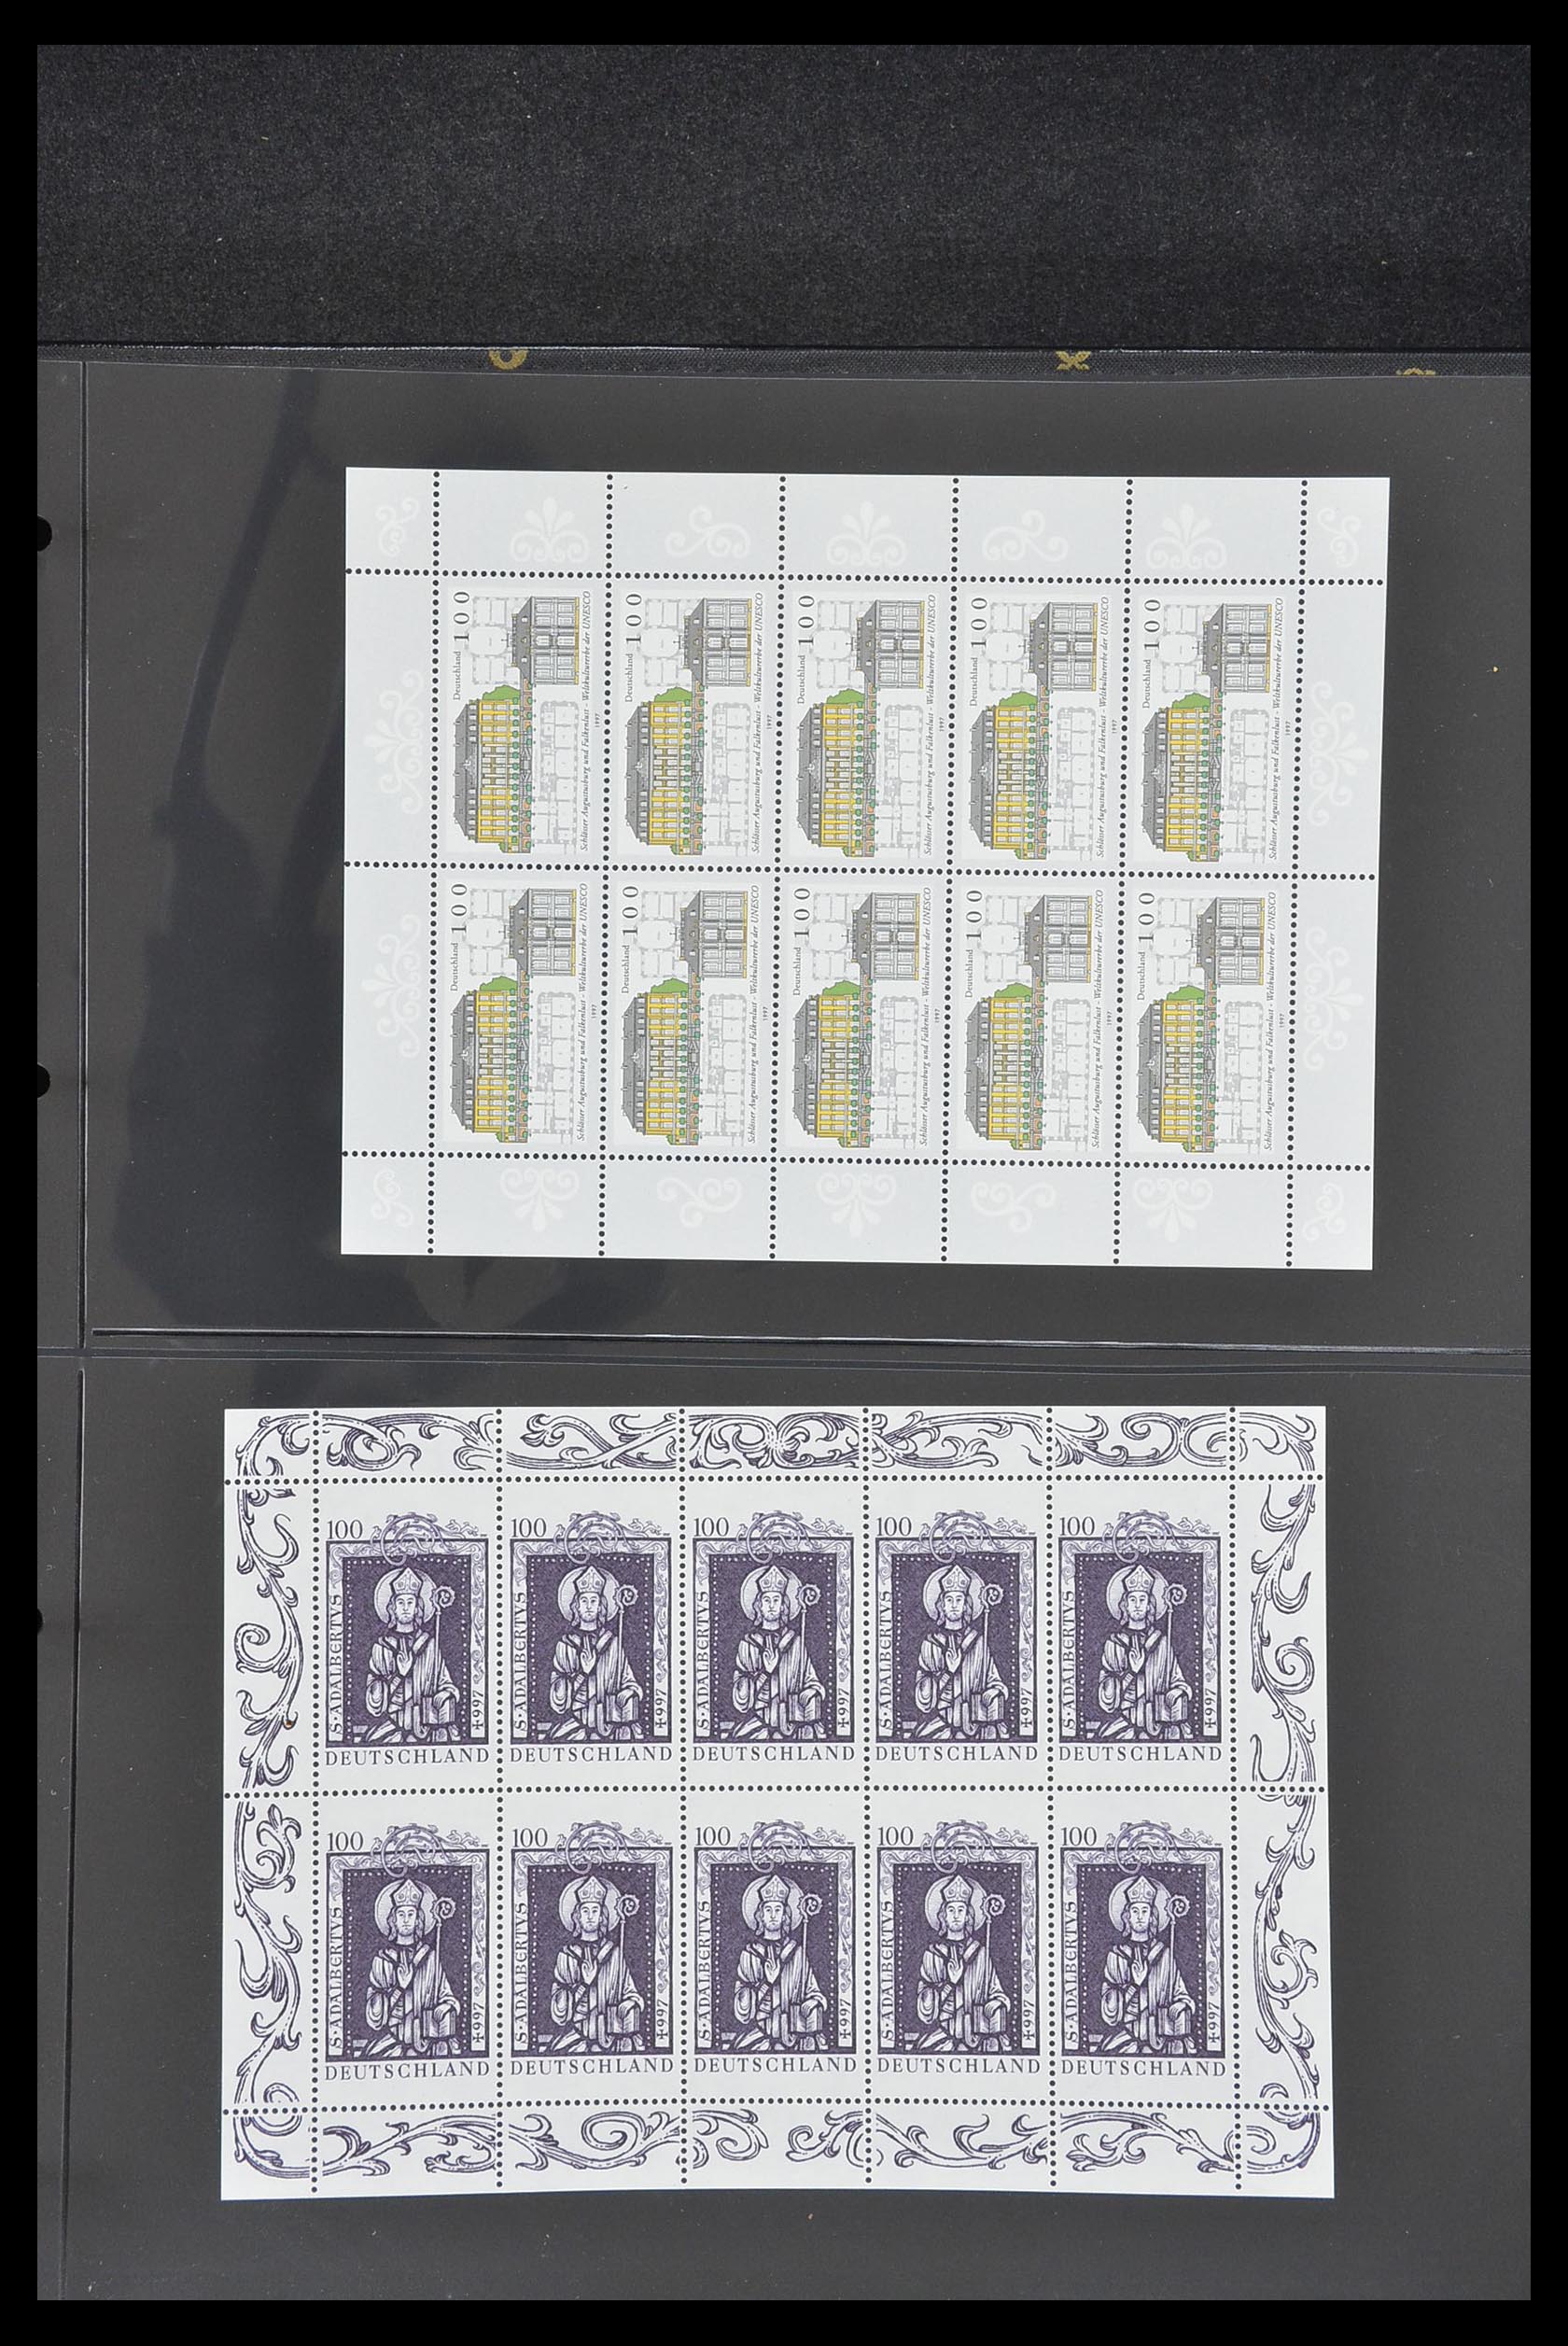 33936 072 - Stamp collection 33936 Bundespost kleinbogen 1994-2000.